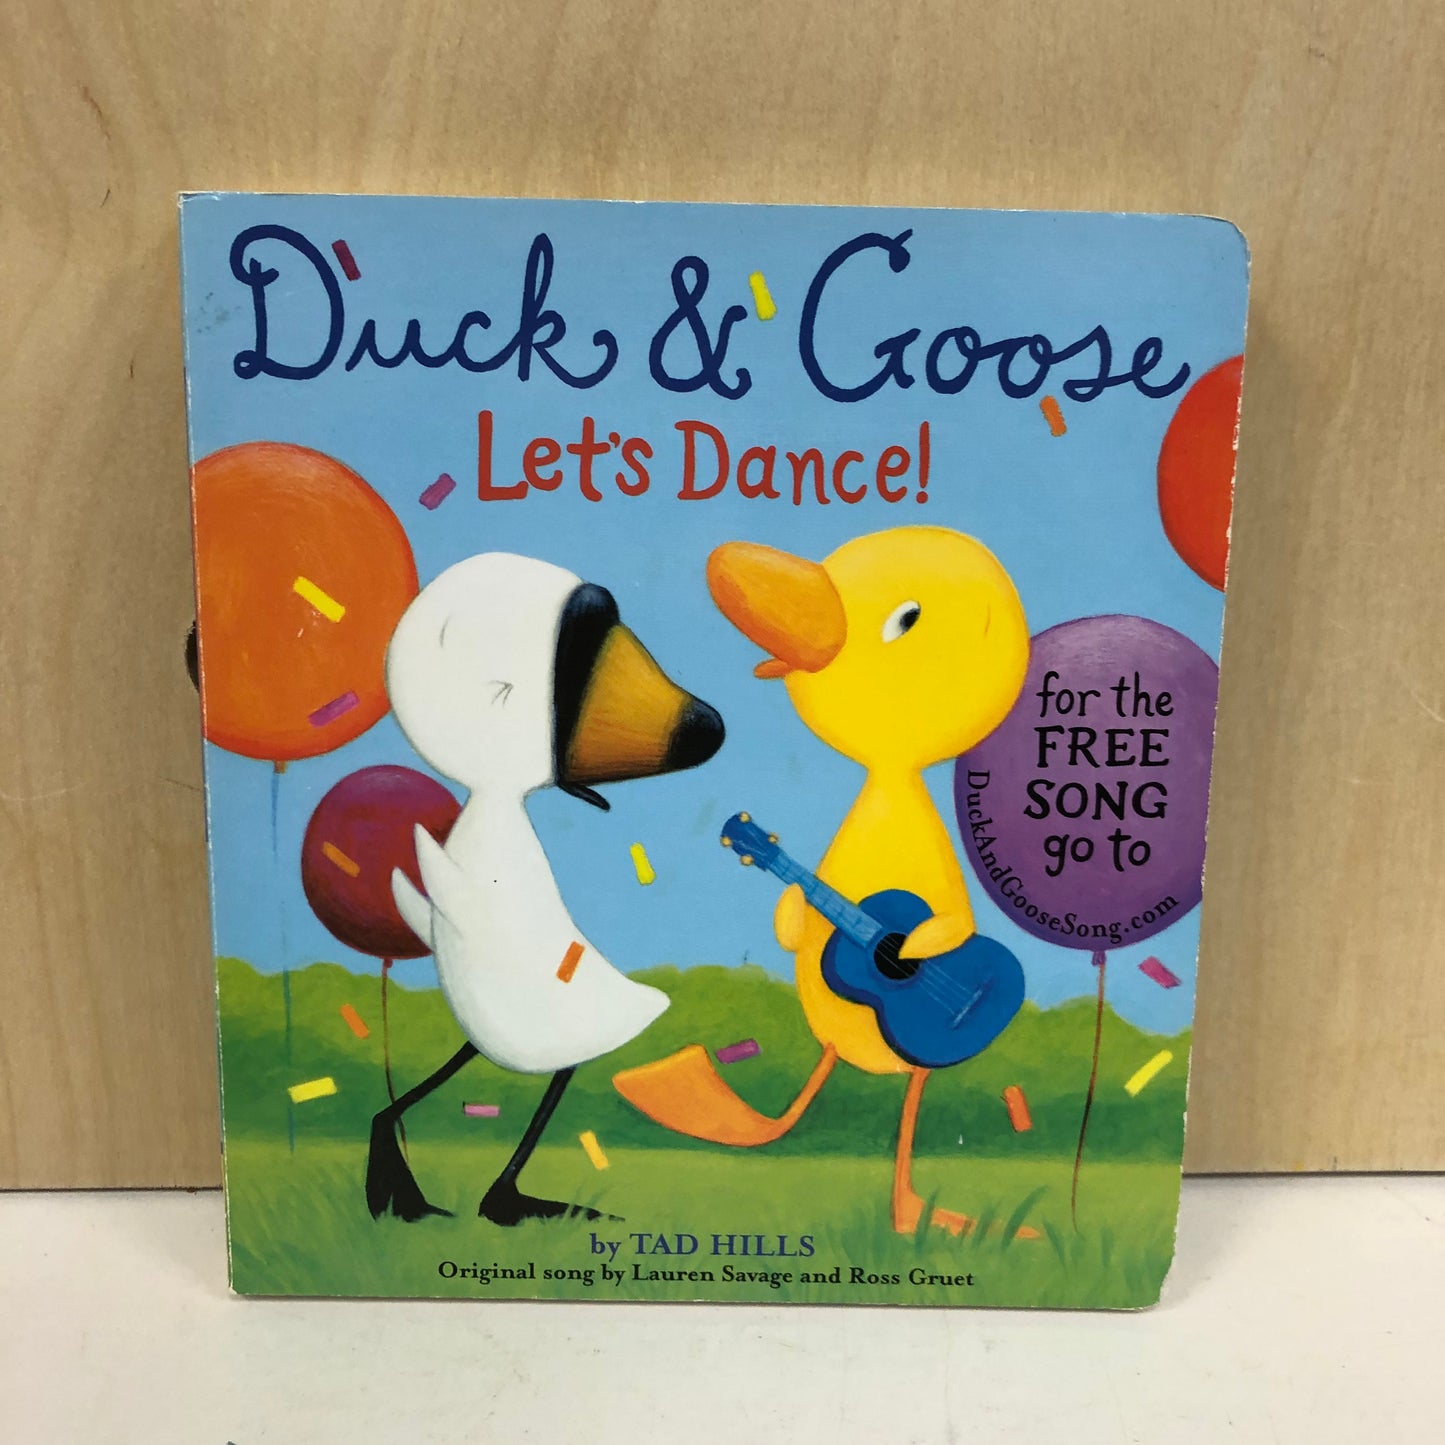 Duck & Goose Let's Dance!